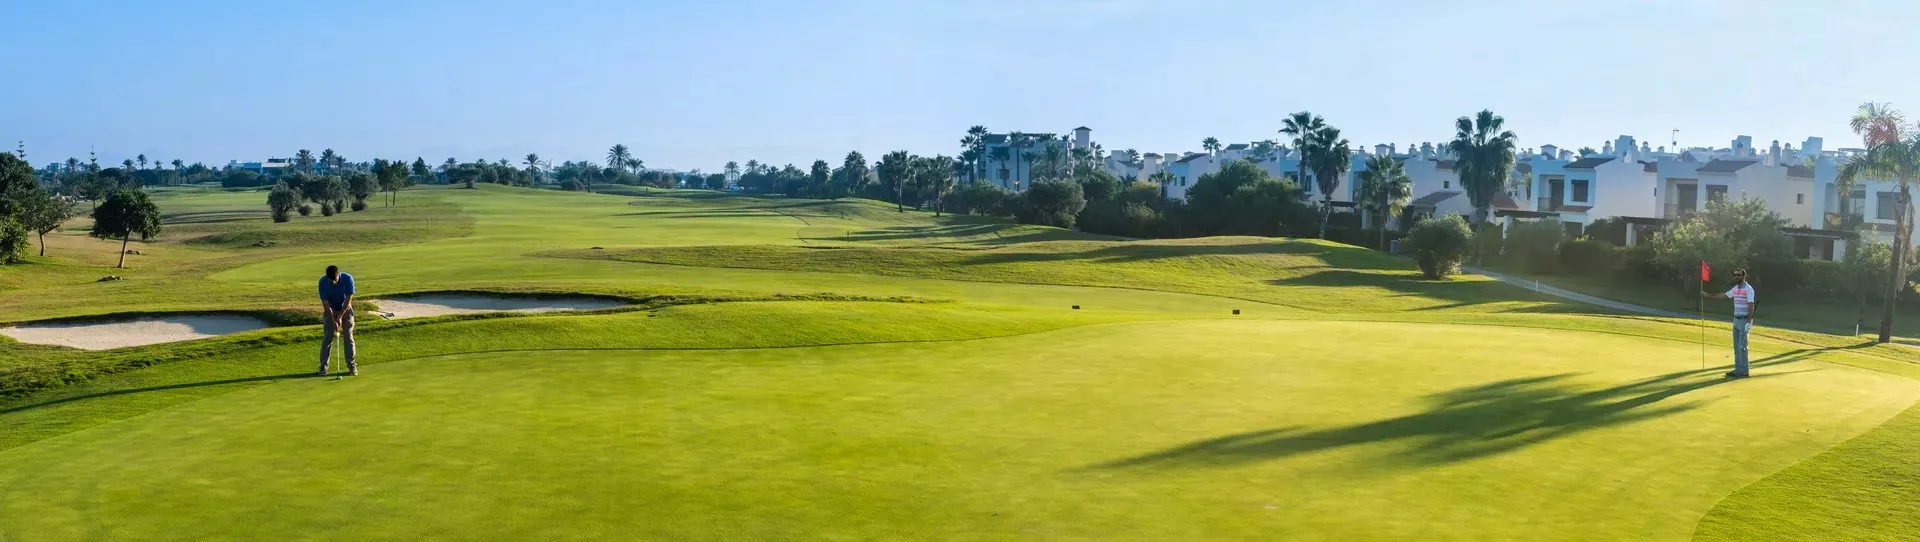 Spain golf courses - Roda Golf Course - Photo 1